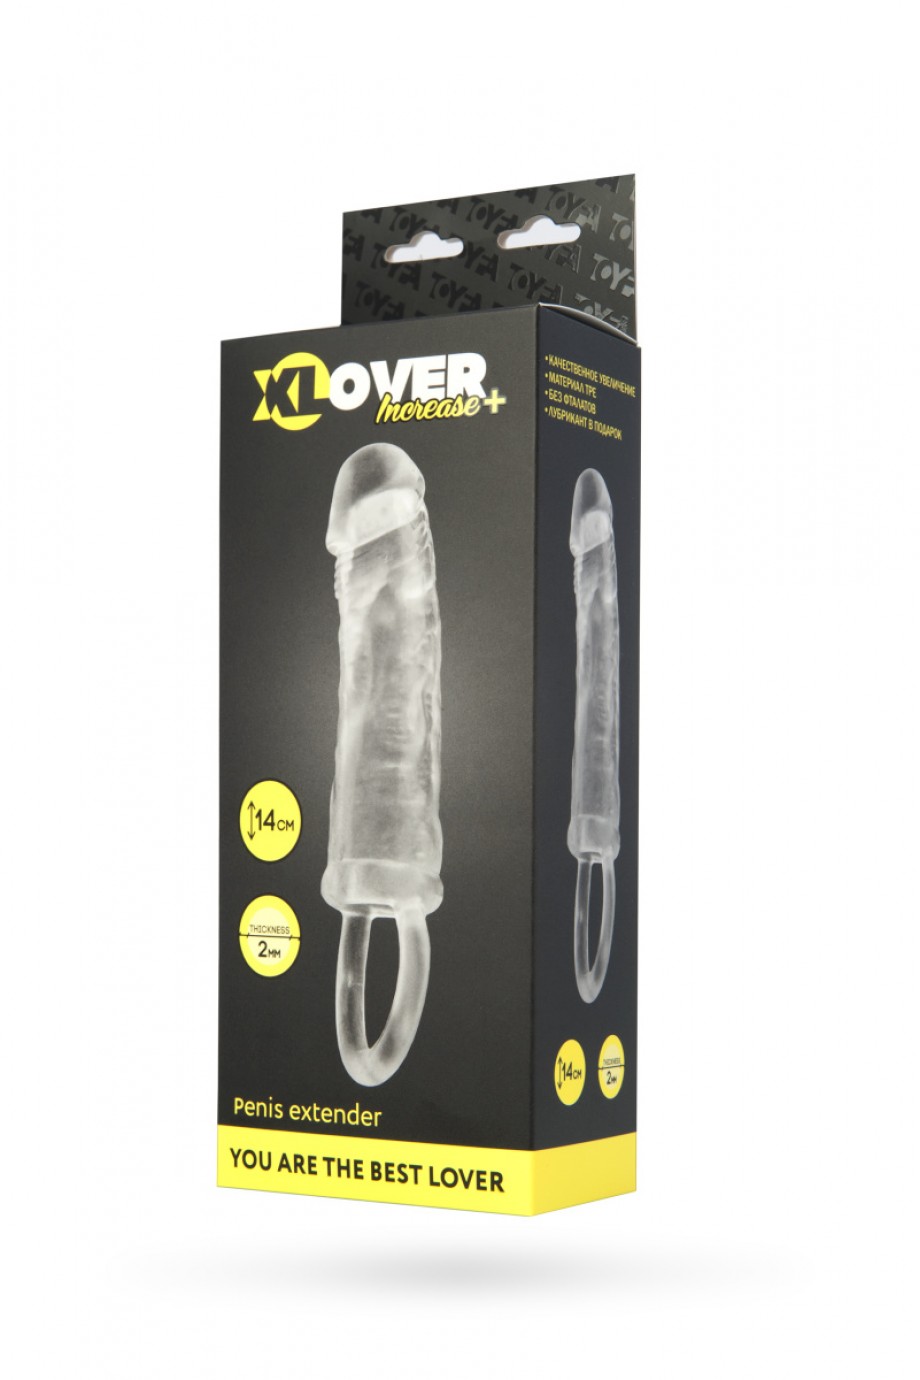 Насадка ToyFa XLover Increase+ для увеличения размера, с кольцом, прозрачная, 14 см